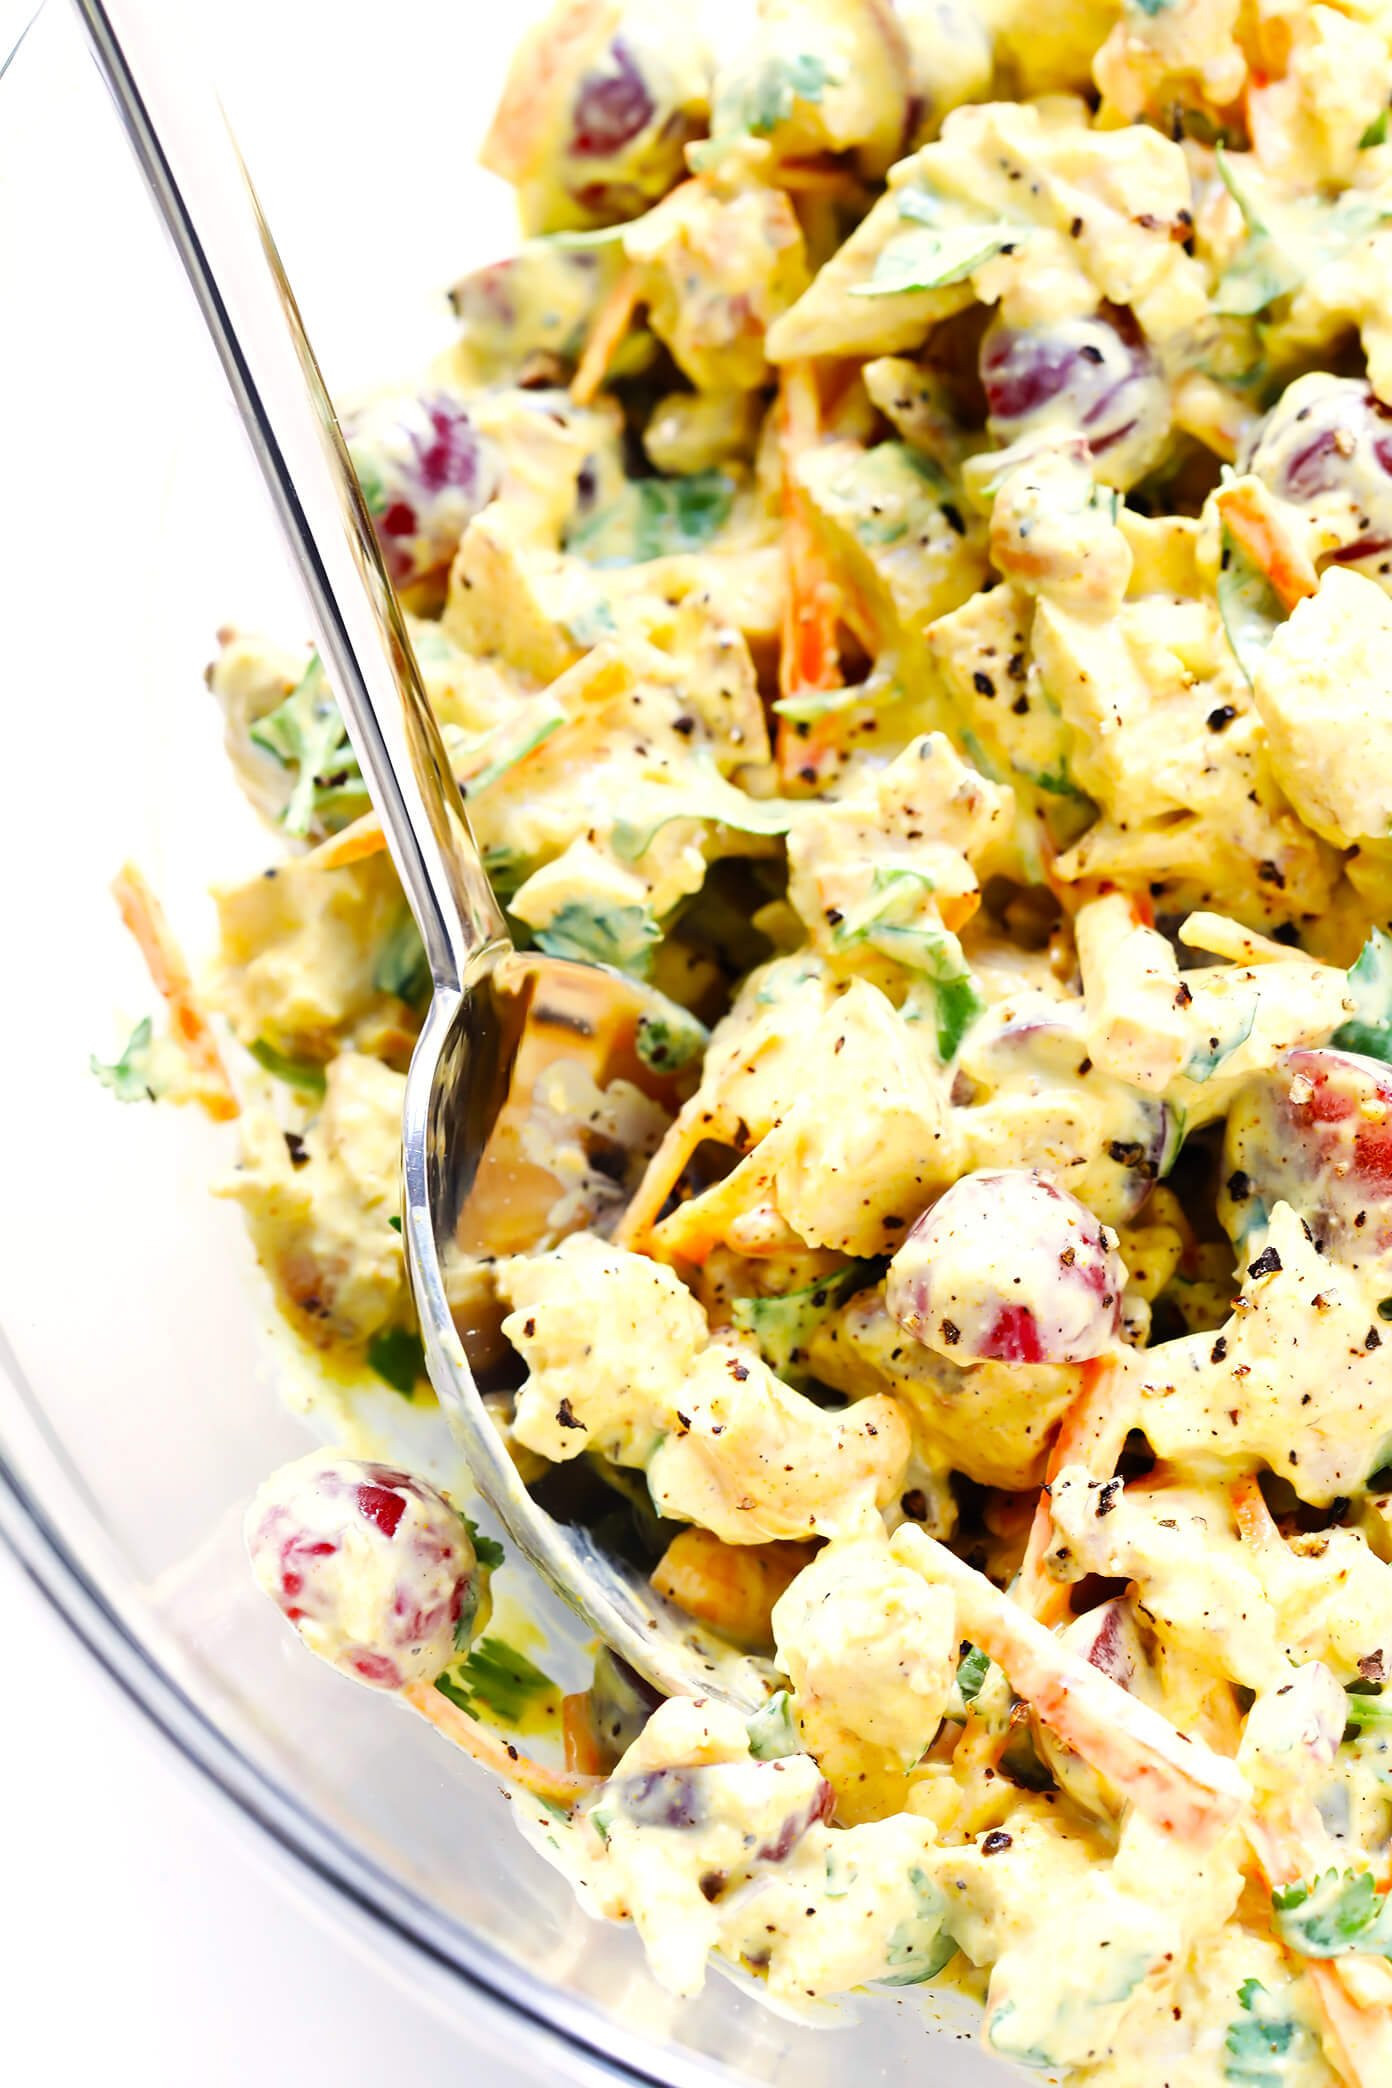 15 Best Curried Chicken Salad